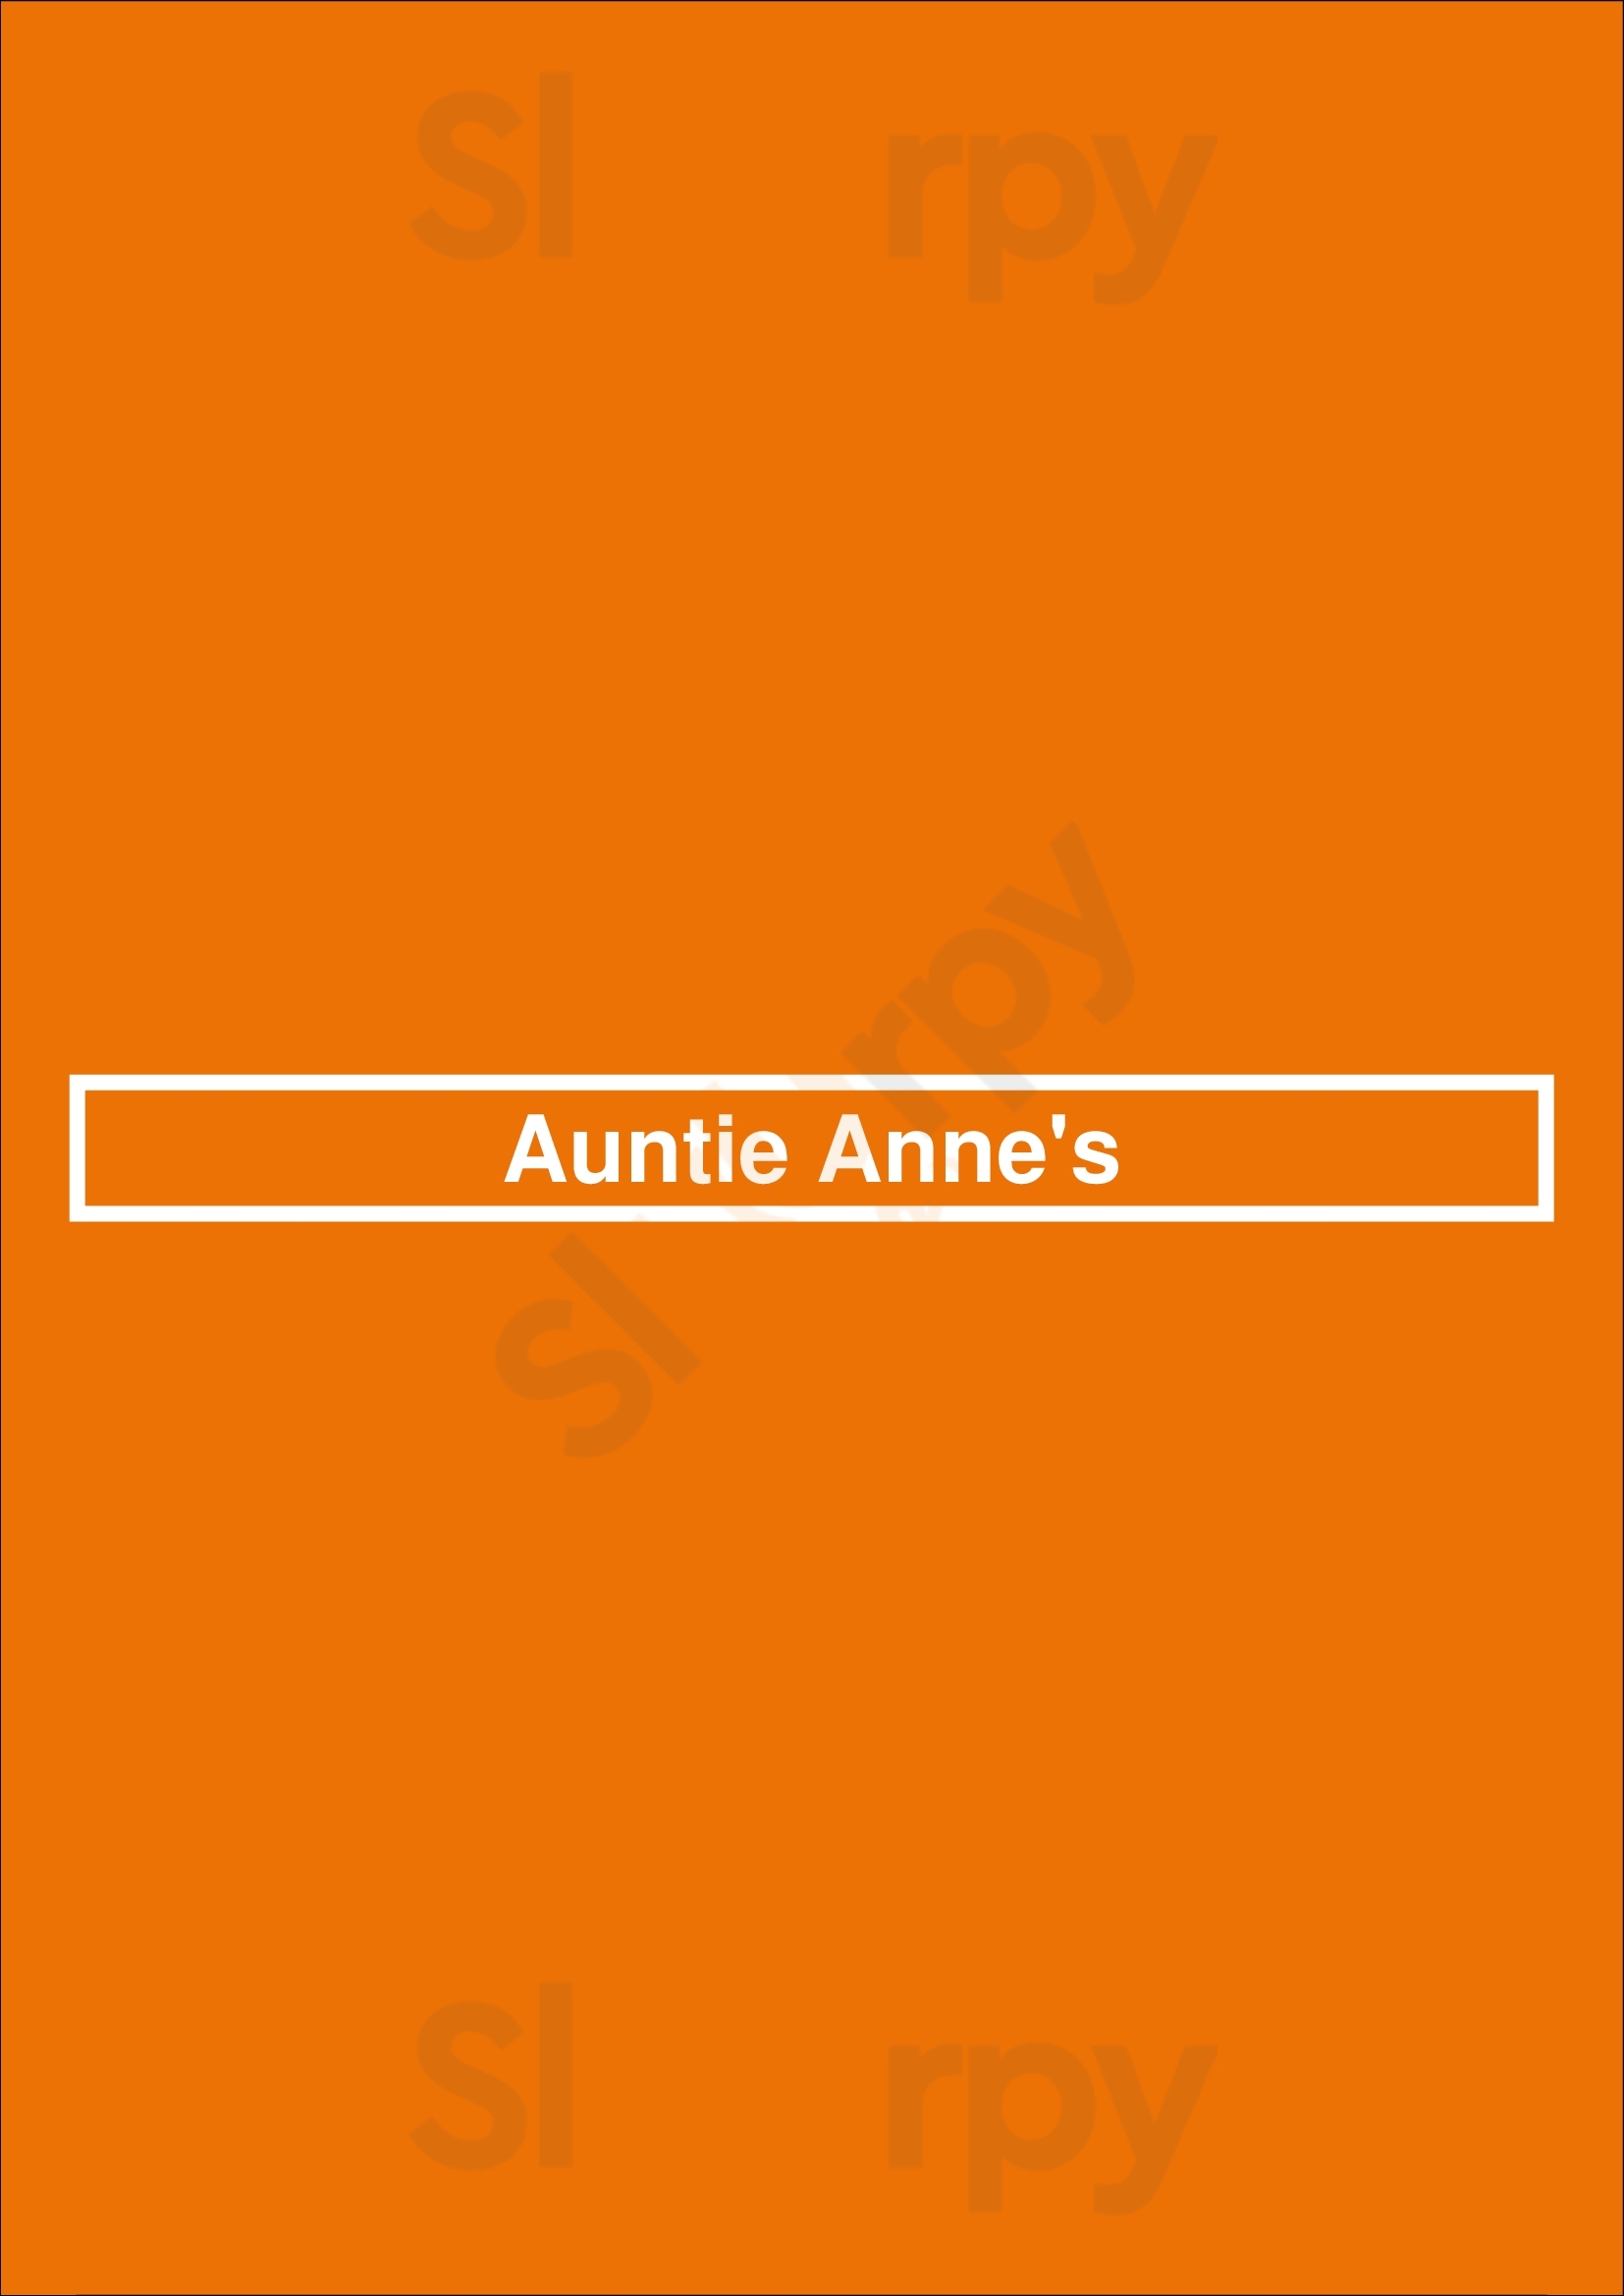 Auntie Anne's Dallas Menu - 1